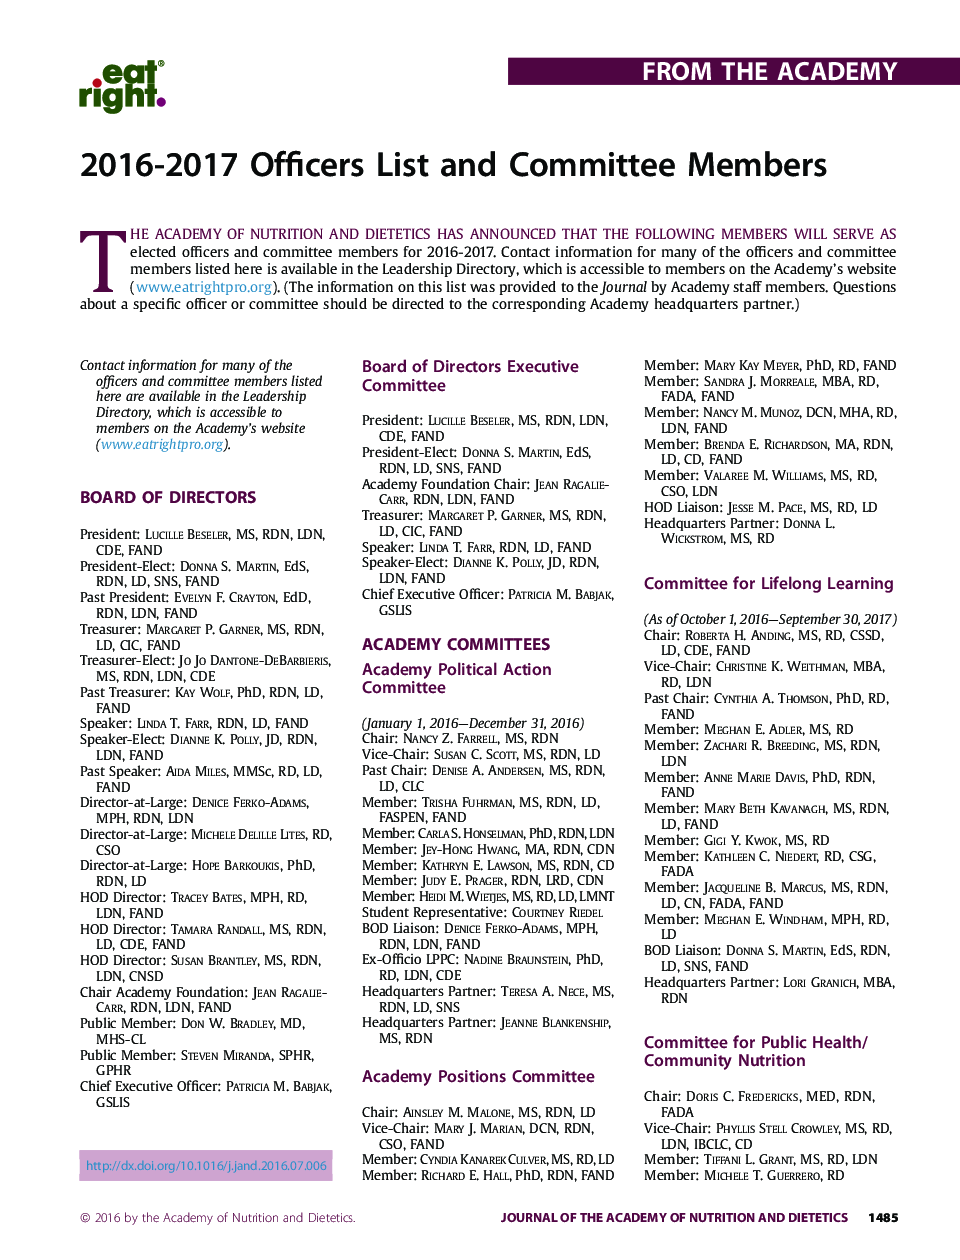 هیئت مدیره 2016-2017 و اعضای کمیته 